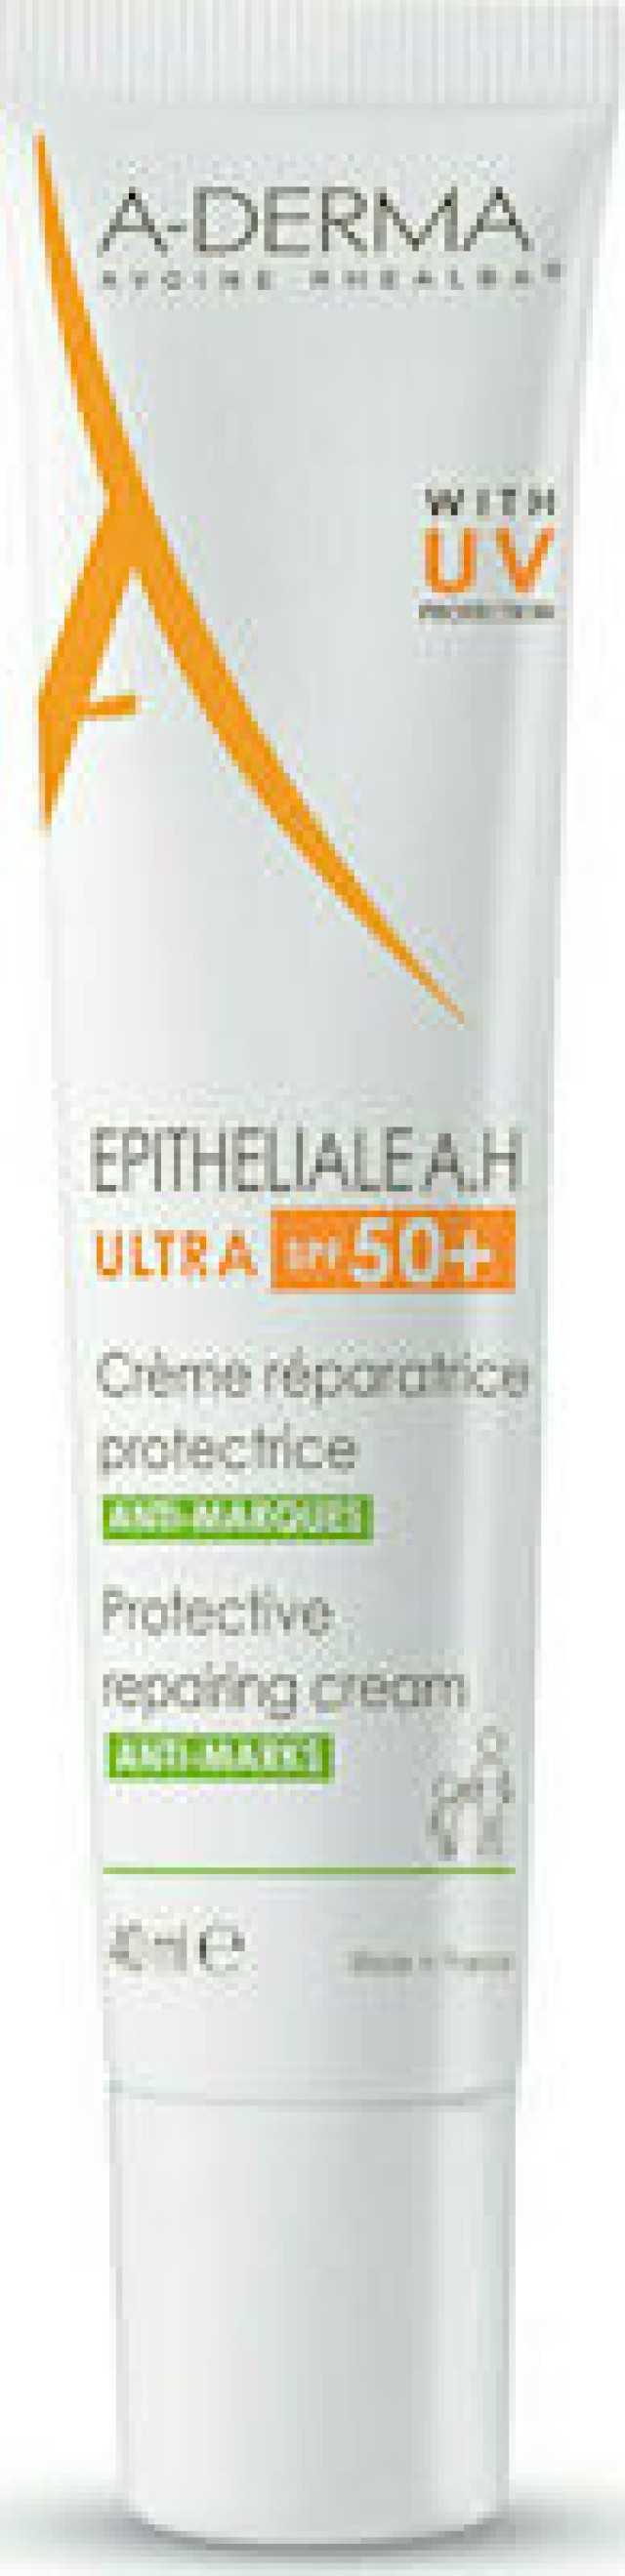 A-Derma Epitheliale A.H Ultra SPF50+Προστατευτική Επανορθωτική Κρέμα Κατά των Σημαδιών, 40ml